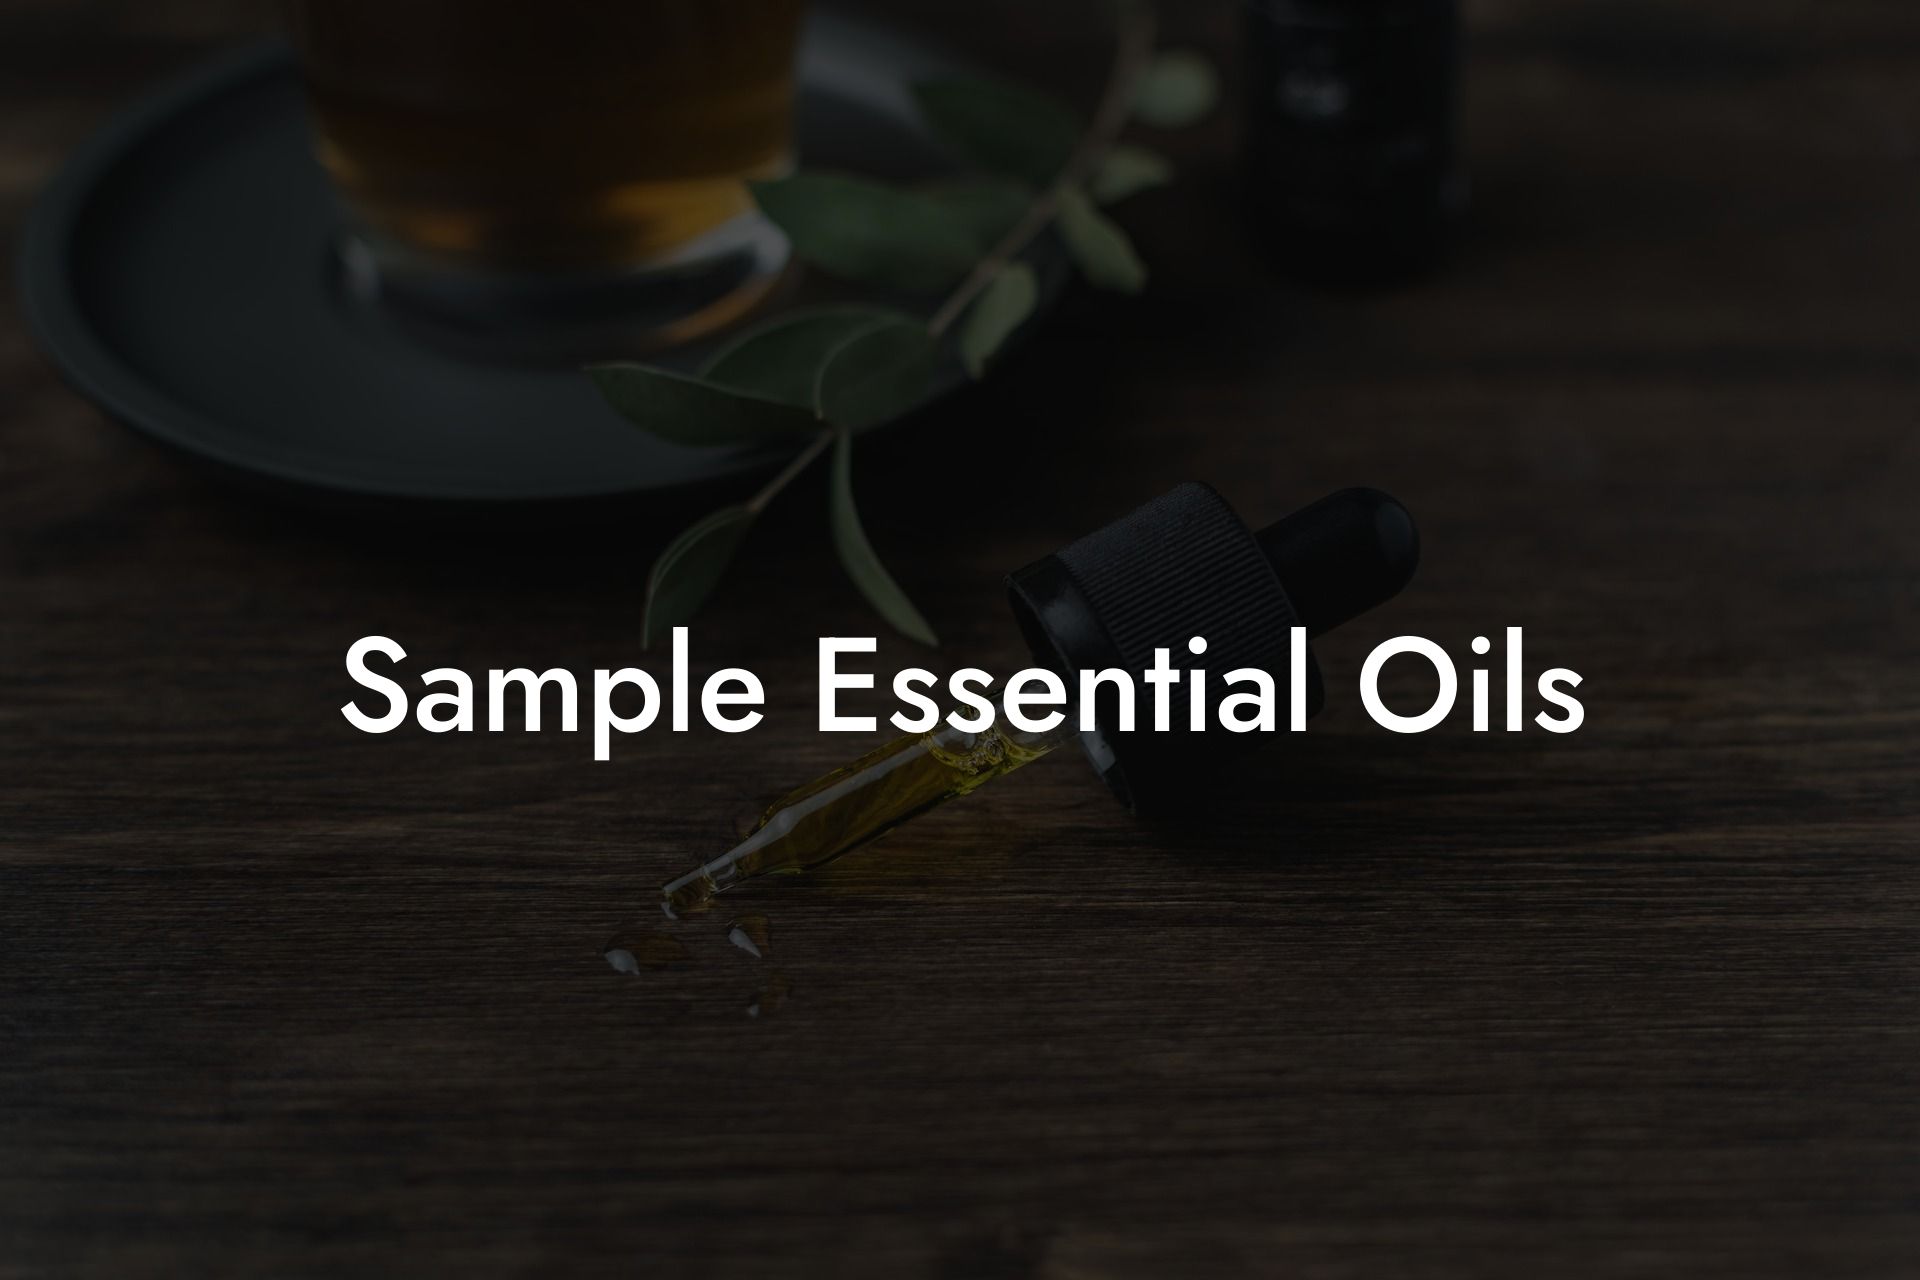 Sample Essential Oils